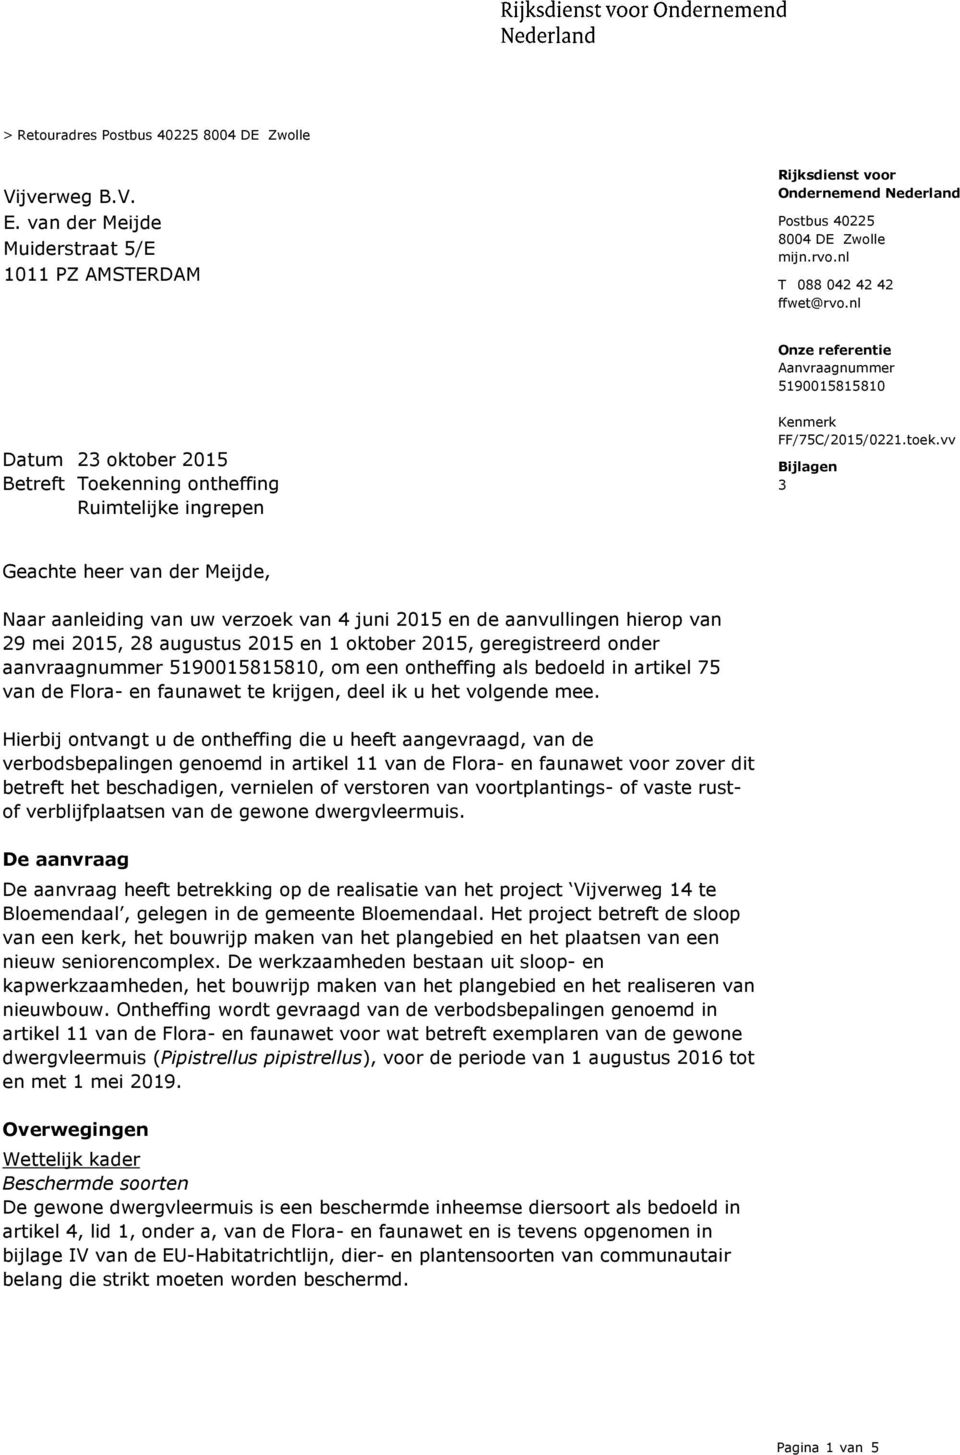 vv Bijlagen 3 Geachte heer van der Meijde, Naar aanleiding van uw verzoek van 4 juni 2015 en de aanvullingen hierop van 29 mei 2015, 28 augustus 2015 en 1 oktober 2015, geregistreerd onder